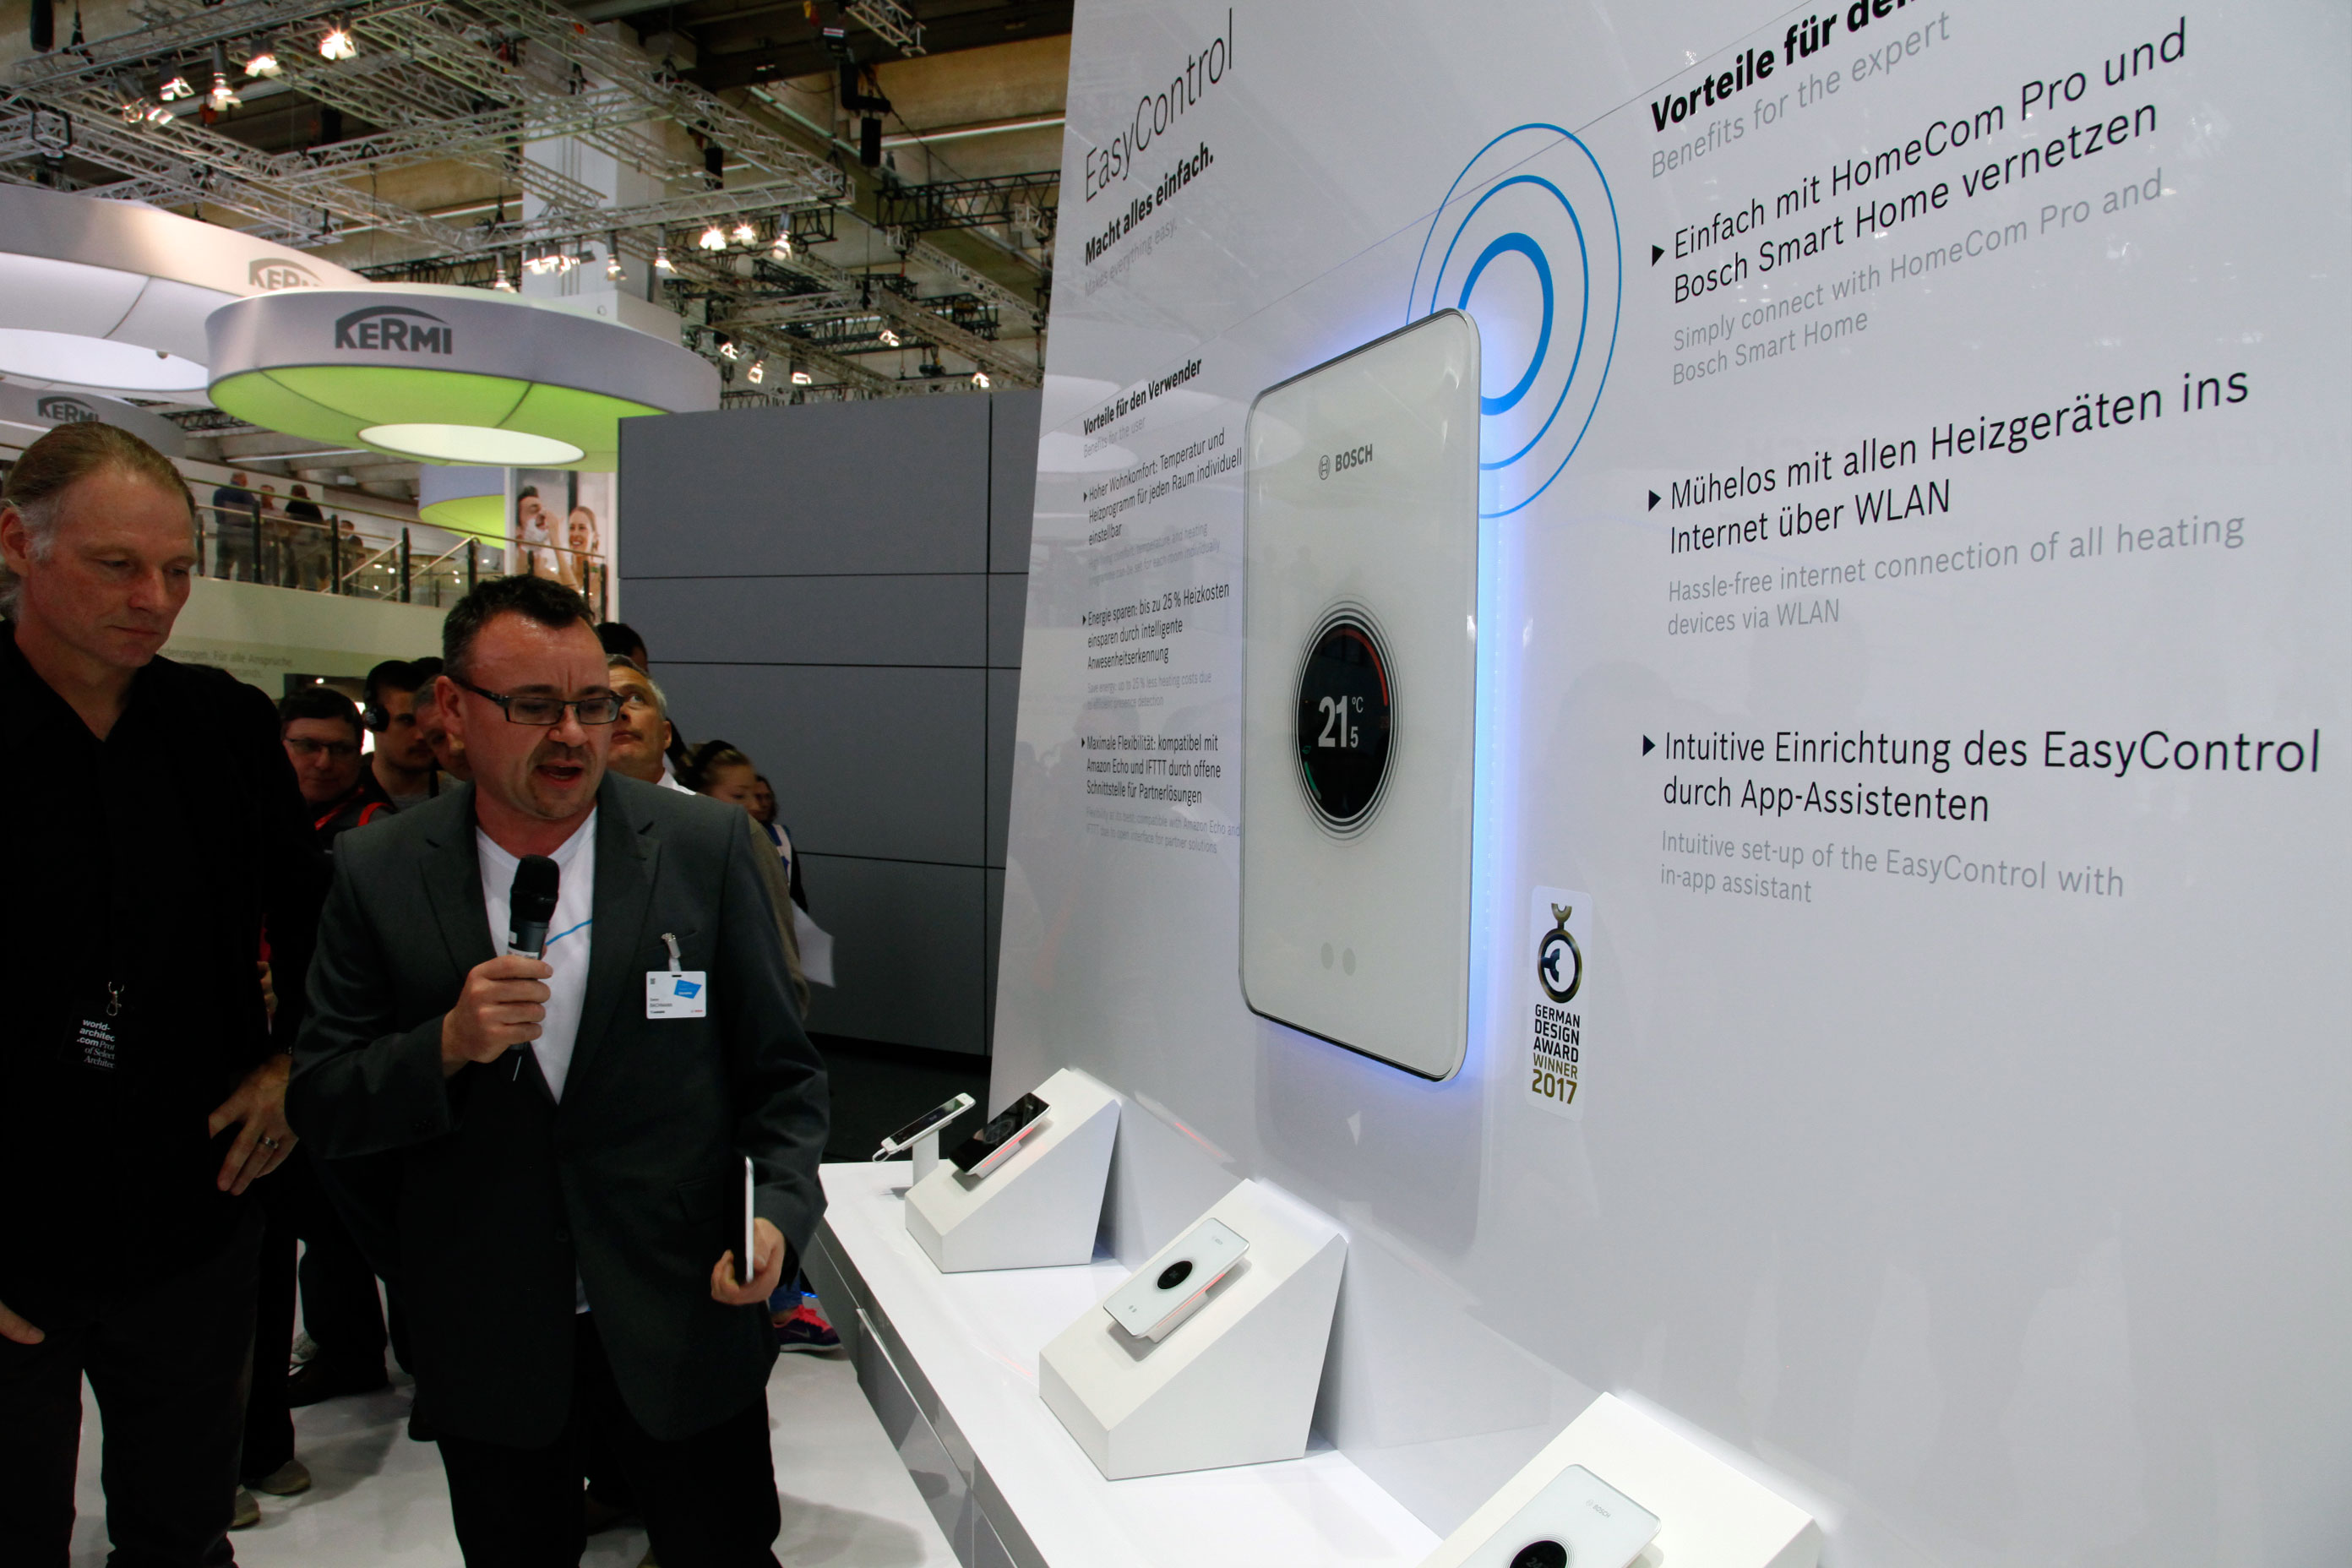 Prof. Markus Pfeil «Innovative, effiziente und integrierte Produkte» at Junkers Bosch